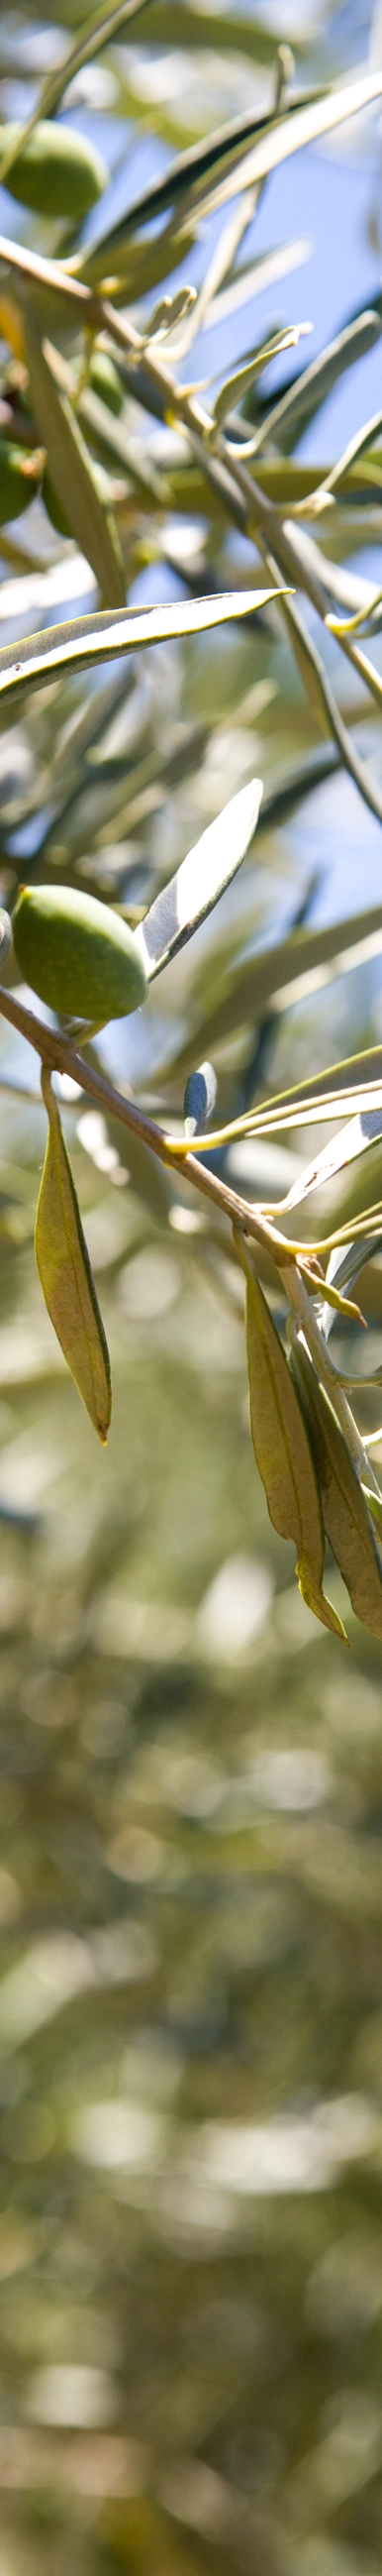 photo d'un olivier, un arbre caractéristique et symbolique des régions méditerranéennes